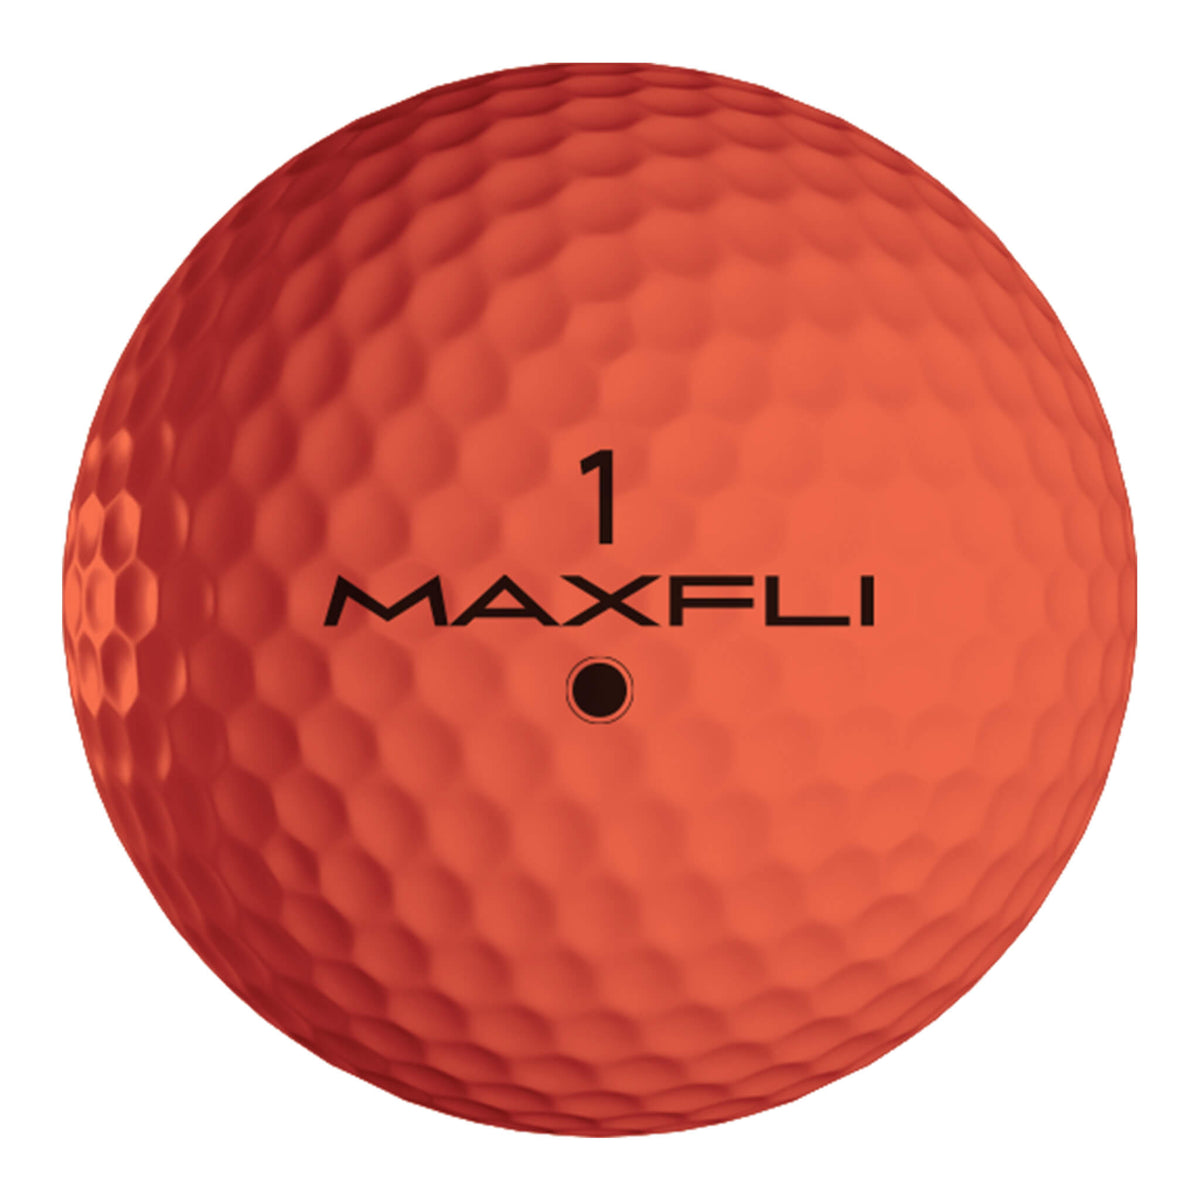 Max-fli Softfli Orange